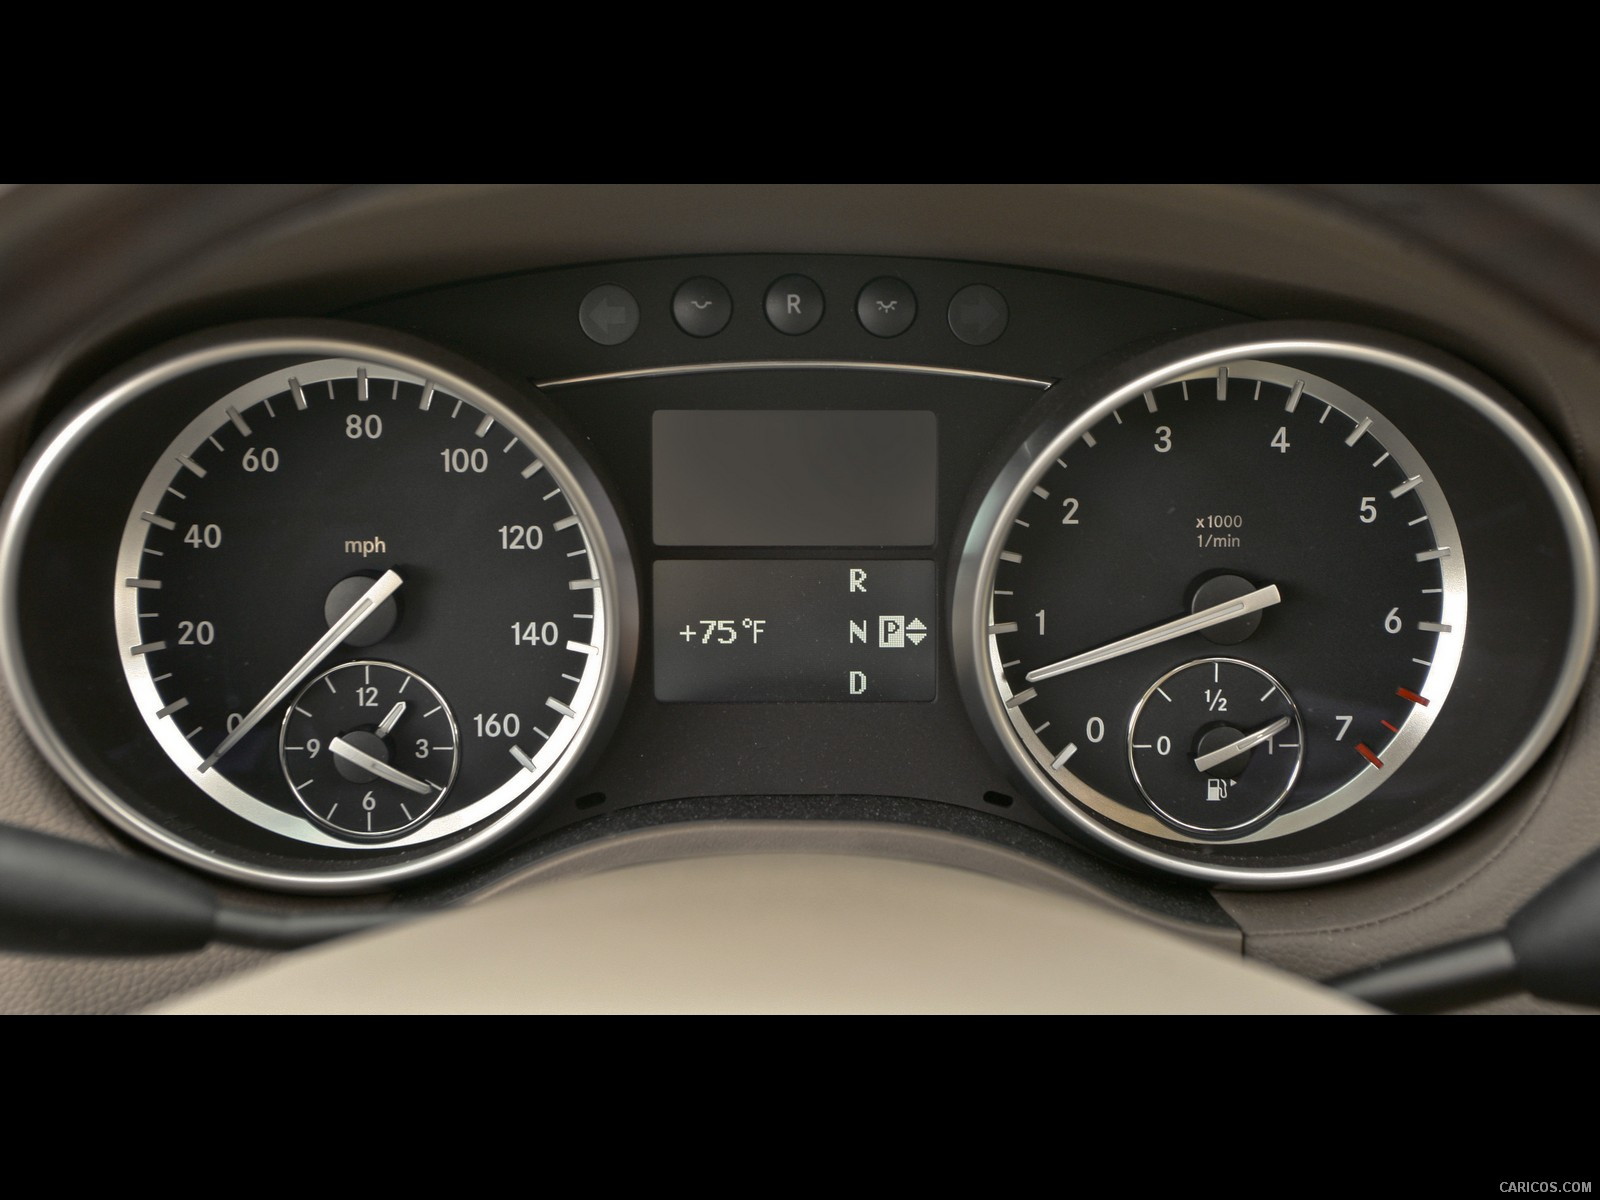 2010 Mercedes-Benz GL450 - Interior, #102 of 112